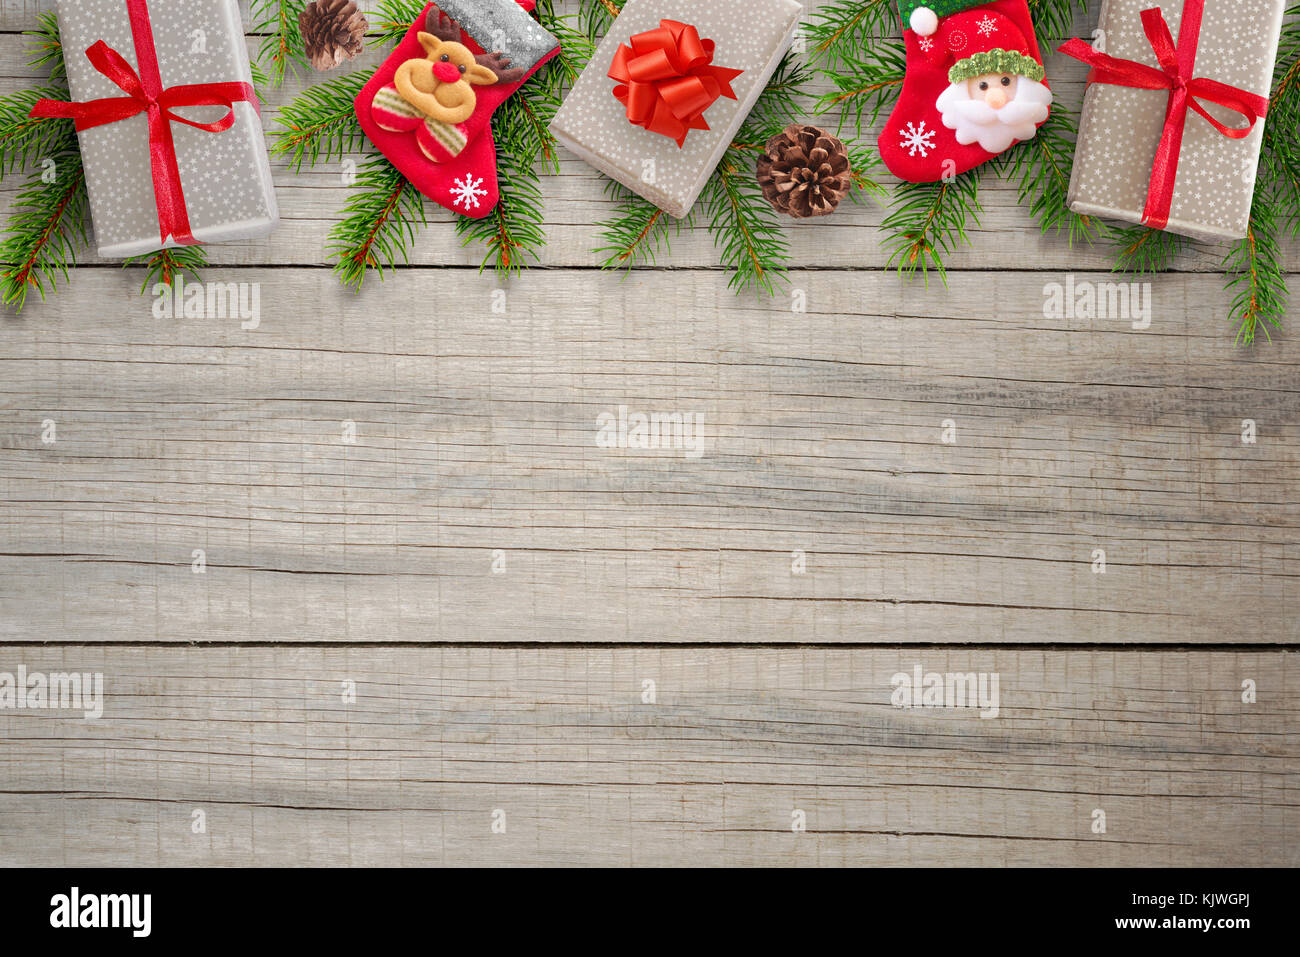 Composition de Noël sur table en bois. des cadeaux, des chaussettes, des pommes de pin et branches de sapin sur le dessus. l'espace libre pour le texte. vue d'en haut. Banque D'Images